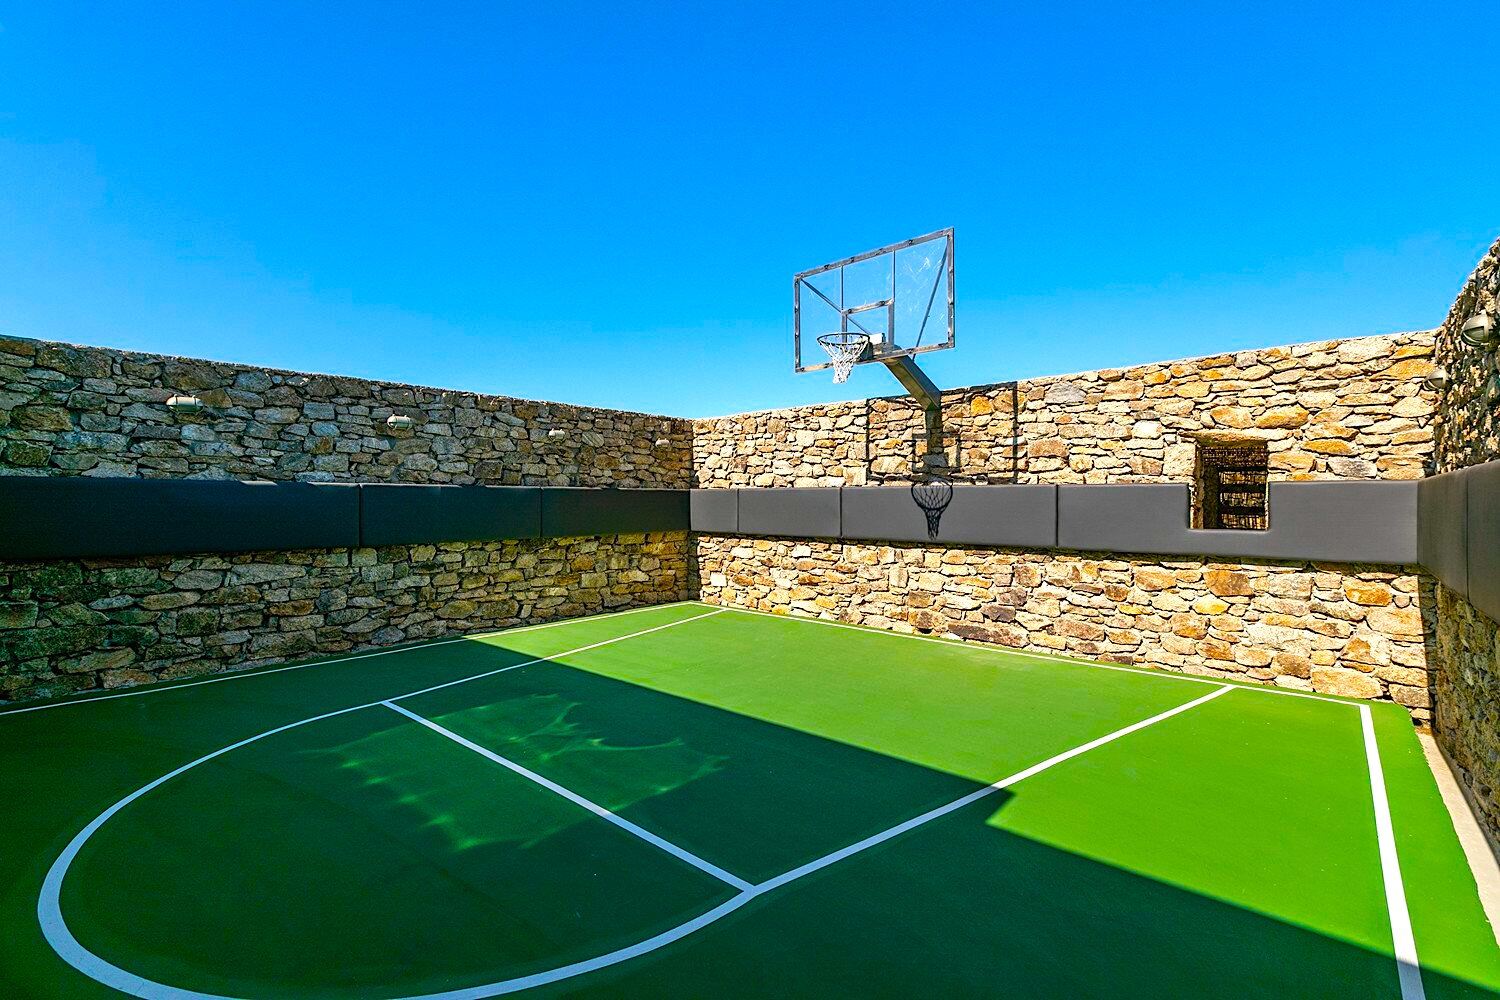 A basketball court 